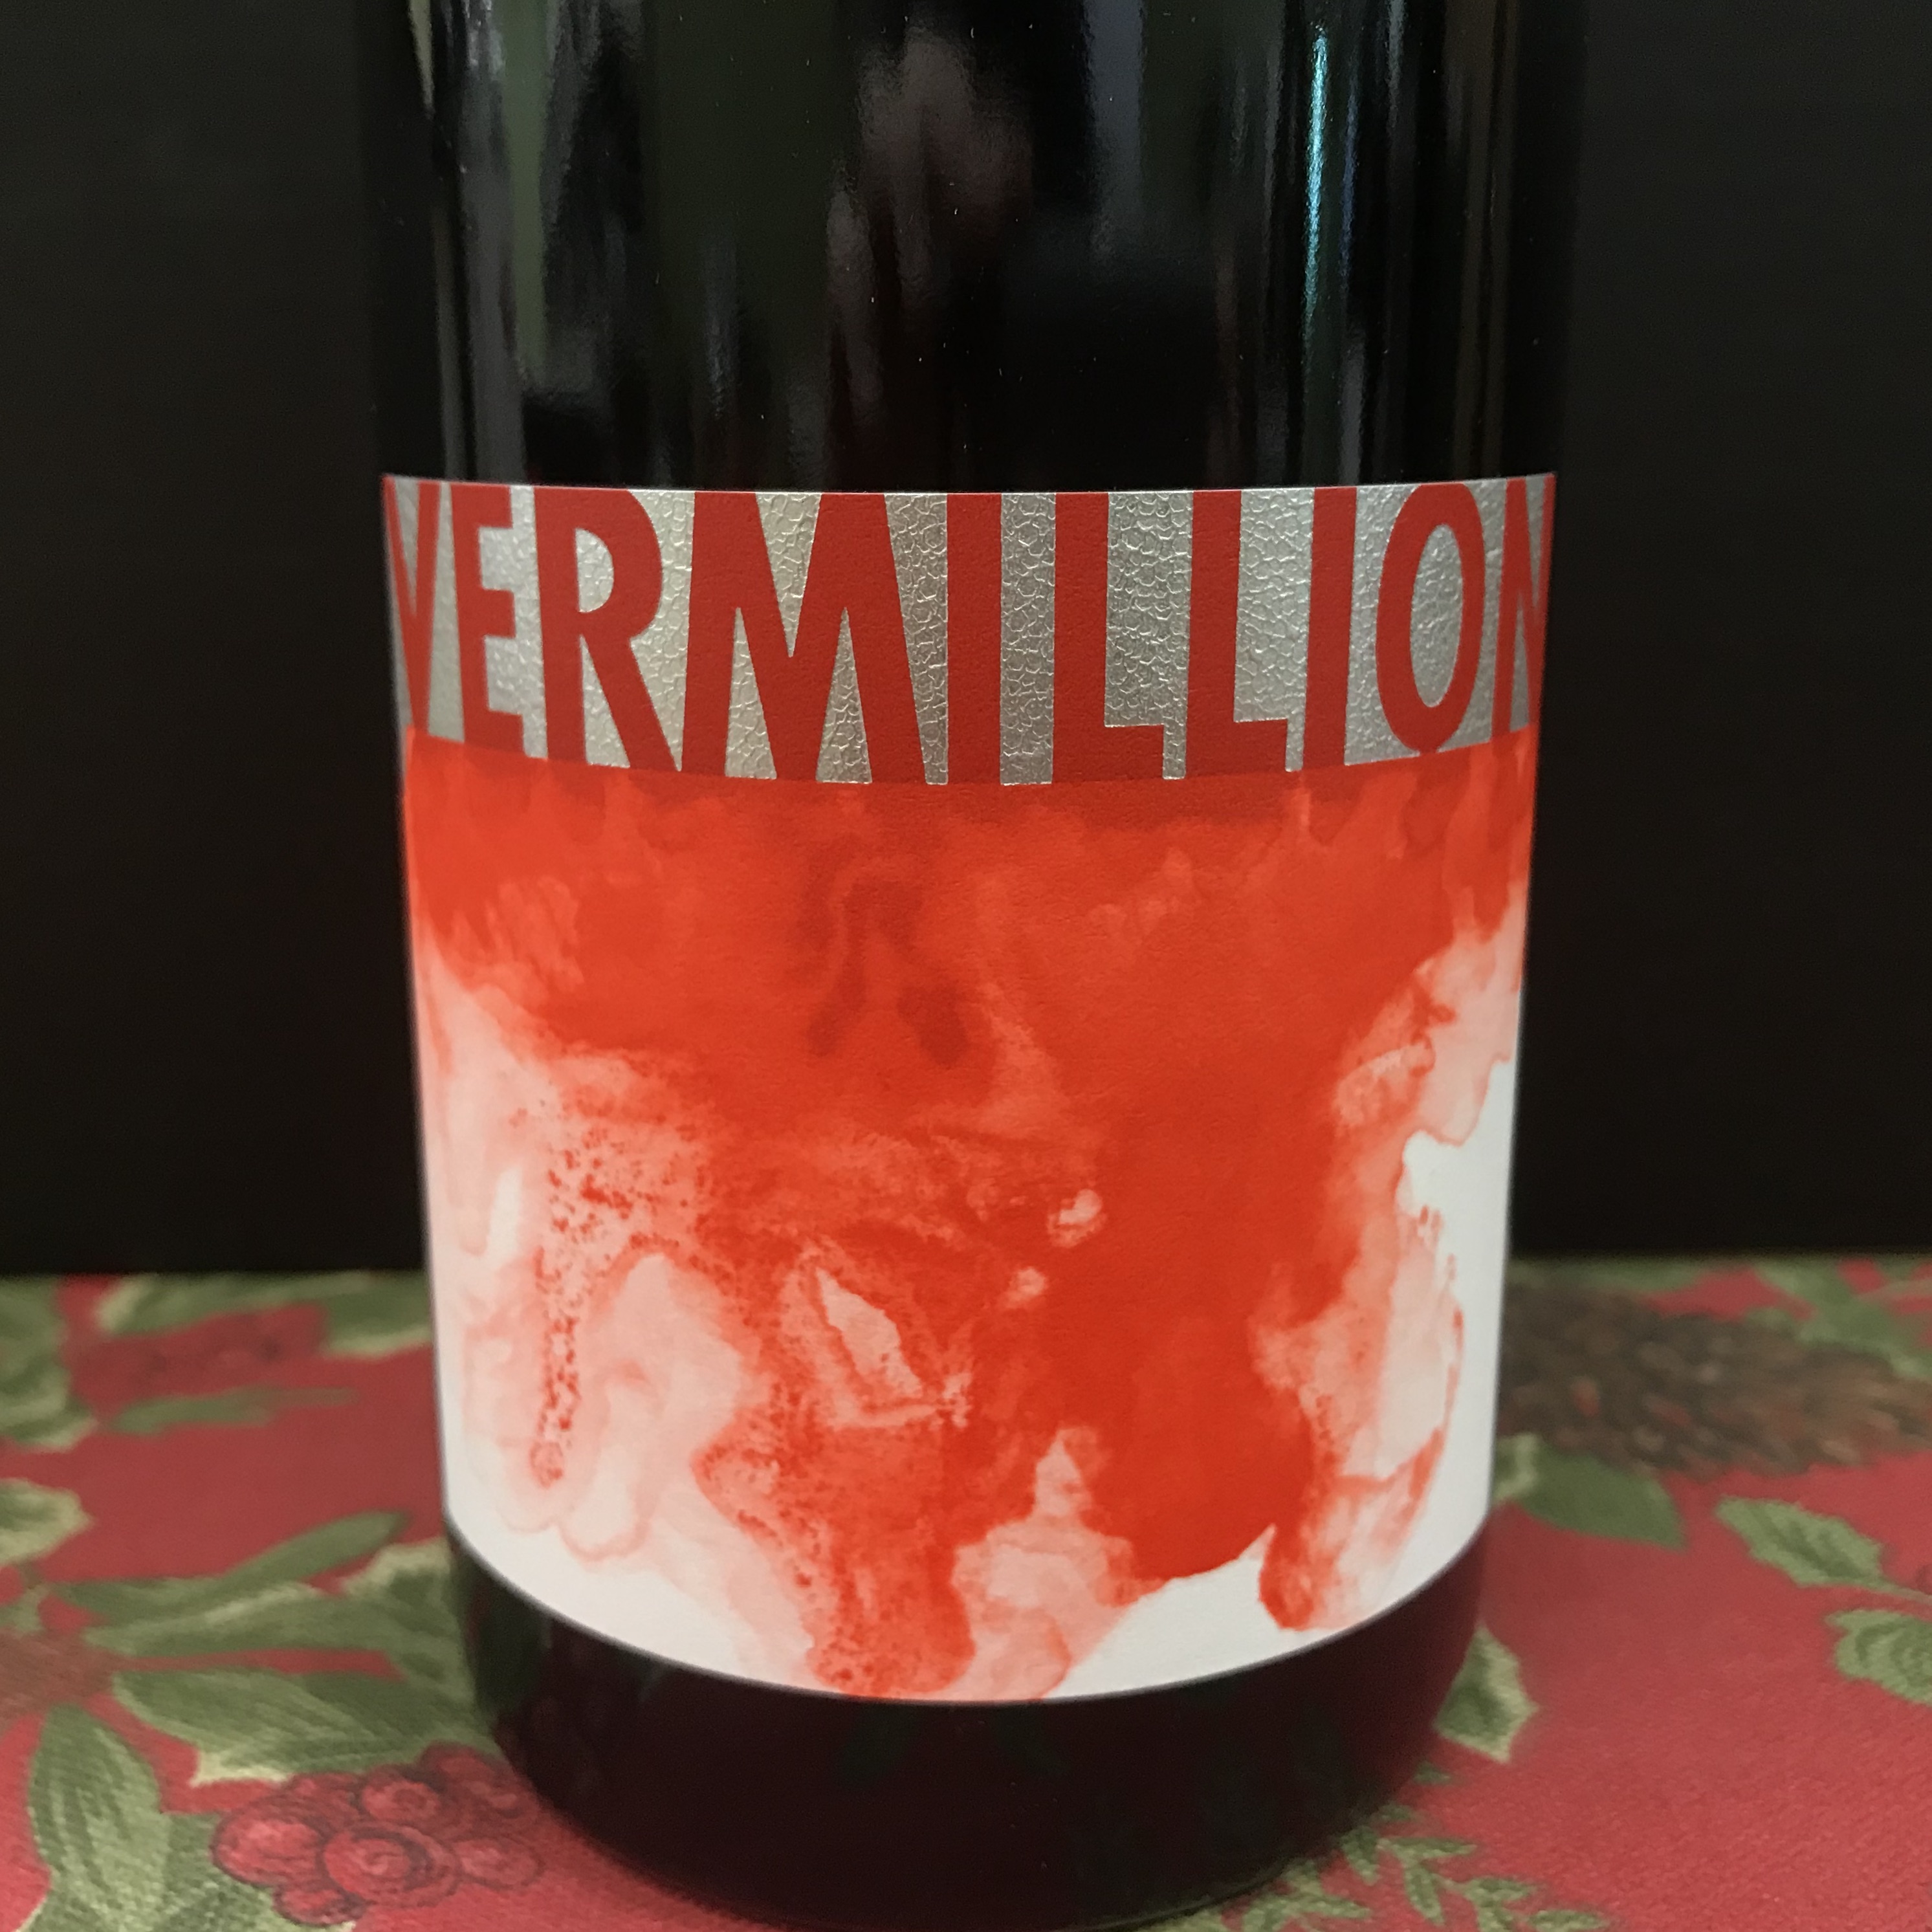 Vermillion Red Wine 2016